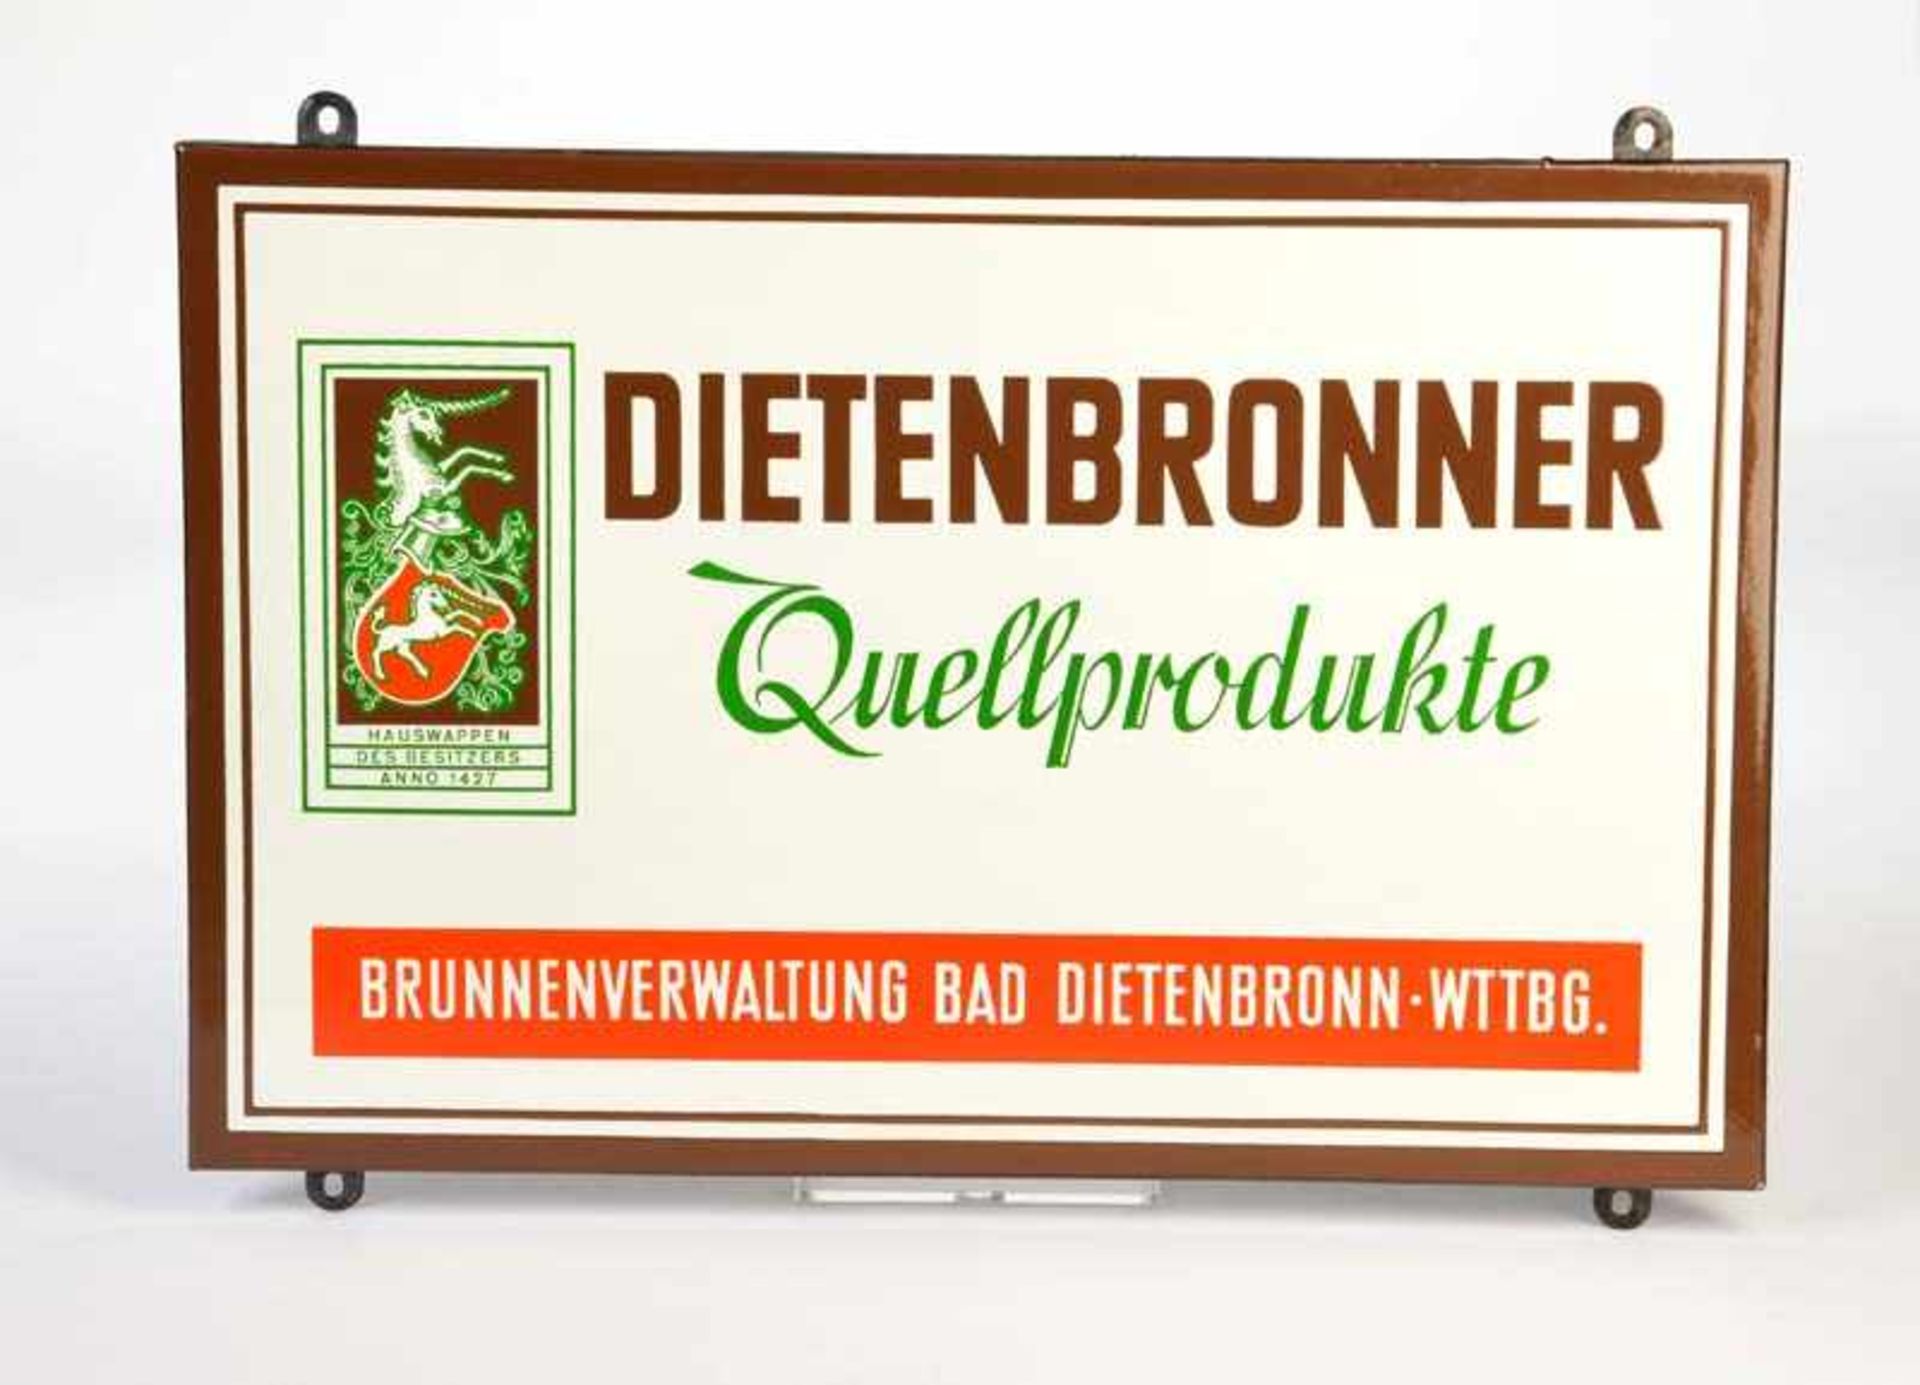 Emailleschild "Dietenbronner Quellprodukte", 38x58 cm, C. Robert Dold, Offenburg i.B., abgekantet, Z